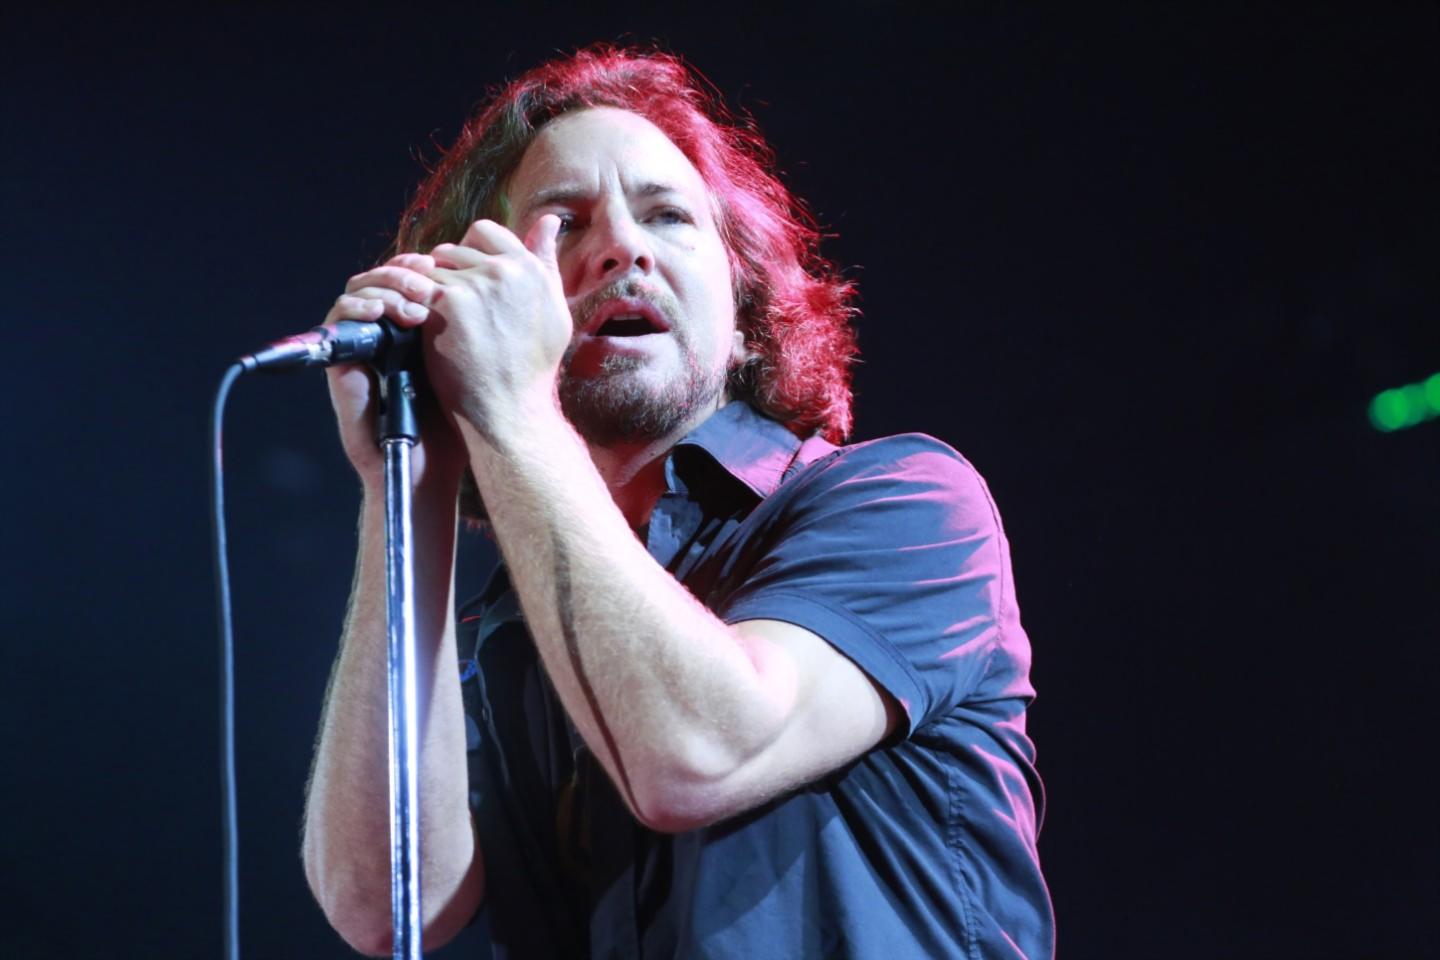 Eddie Vedder Tickets | Eddie Vedder Tour 2018 and Concert Tickets - viagogo1440 x 960